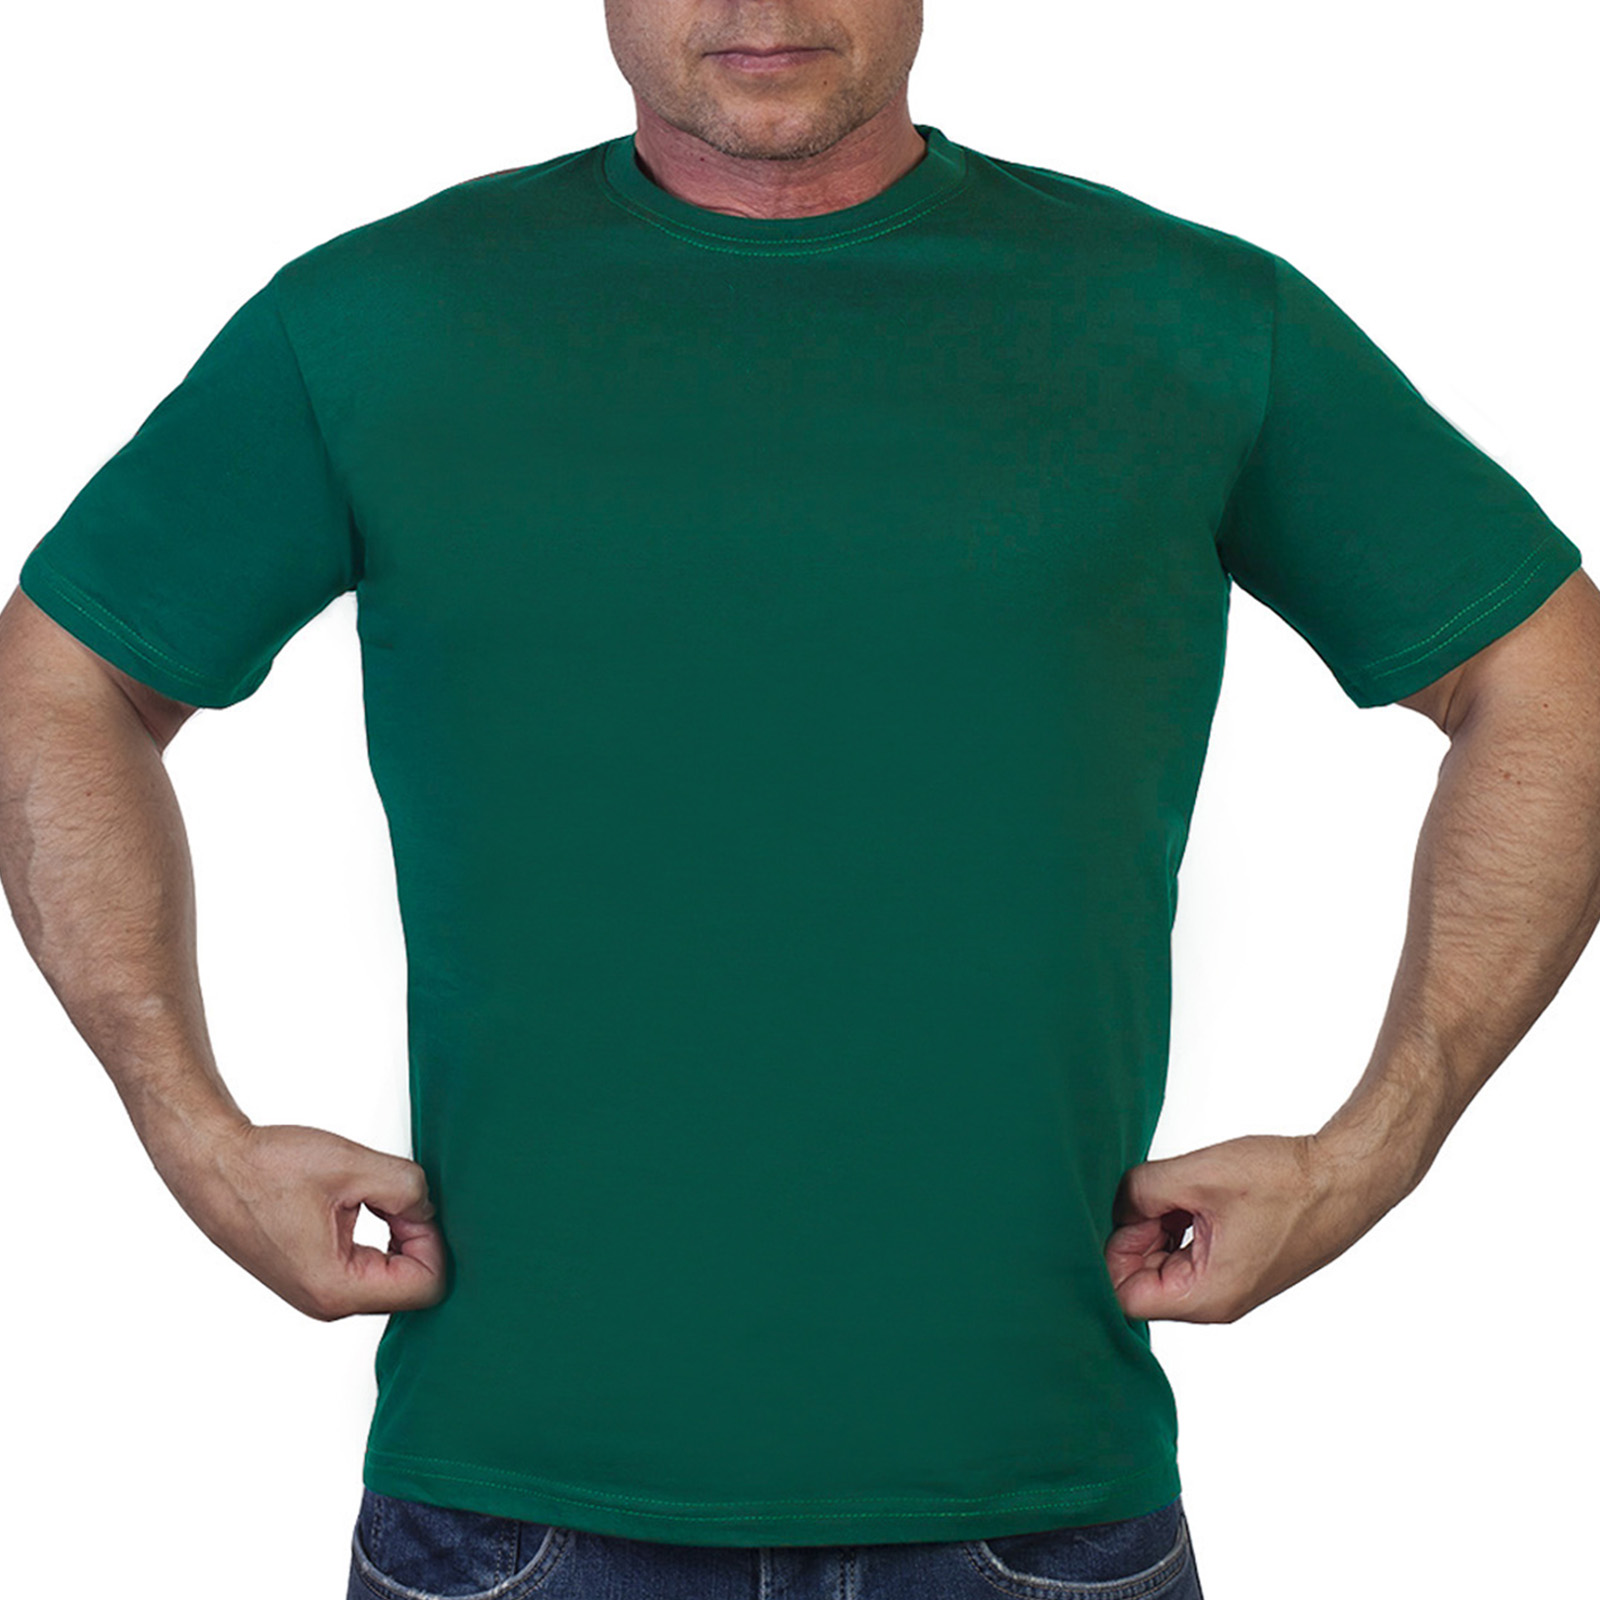 Однотонная зеленая футболка - в розницу и оптом